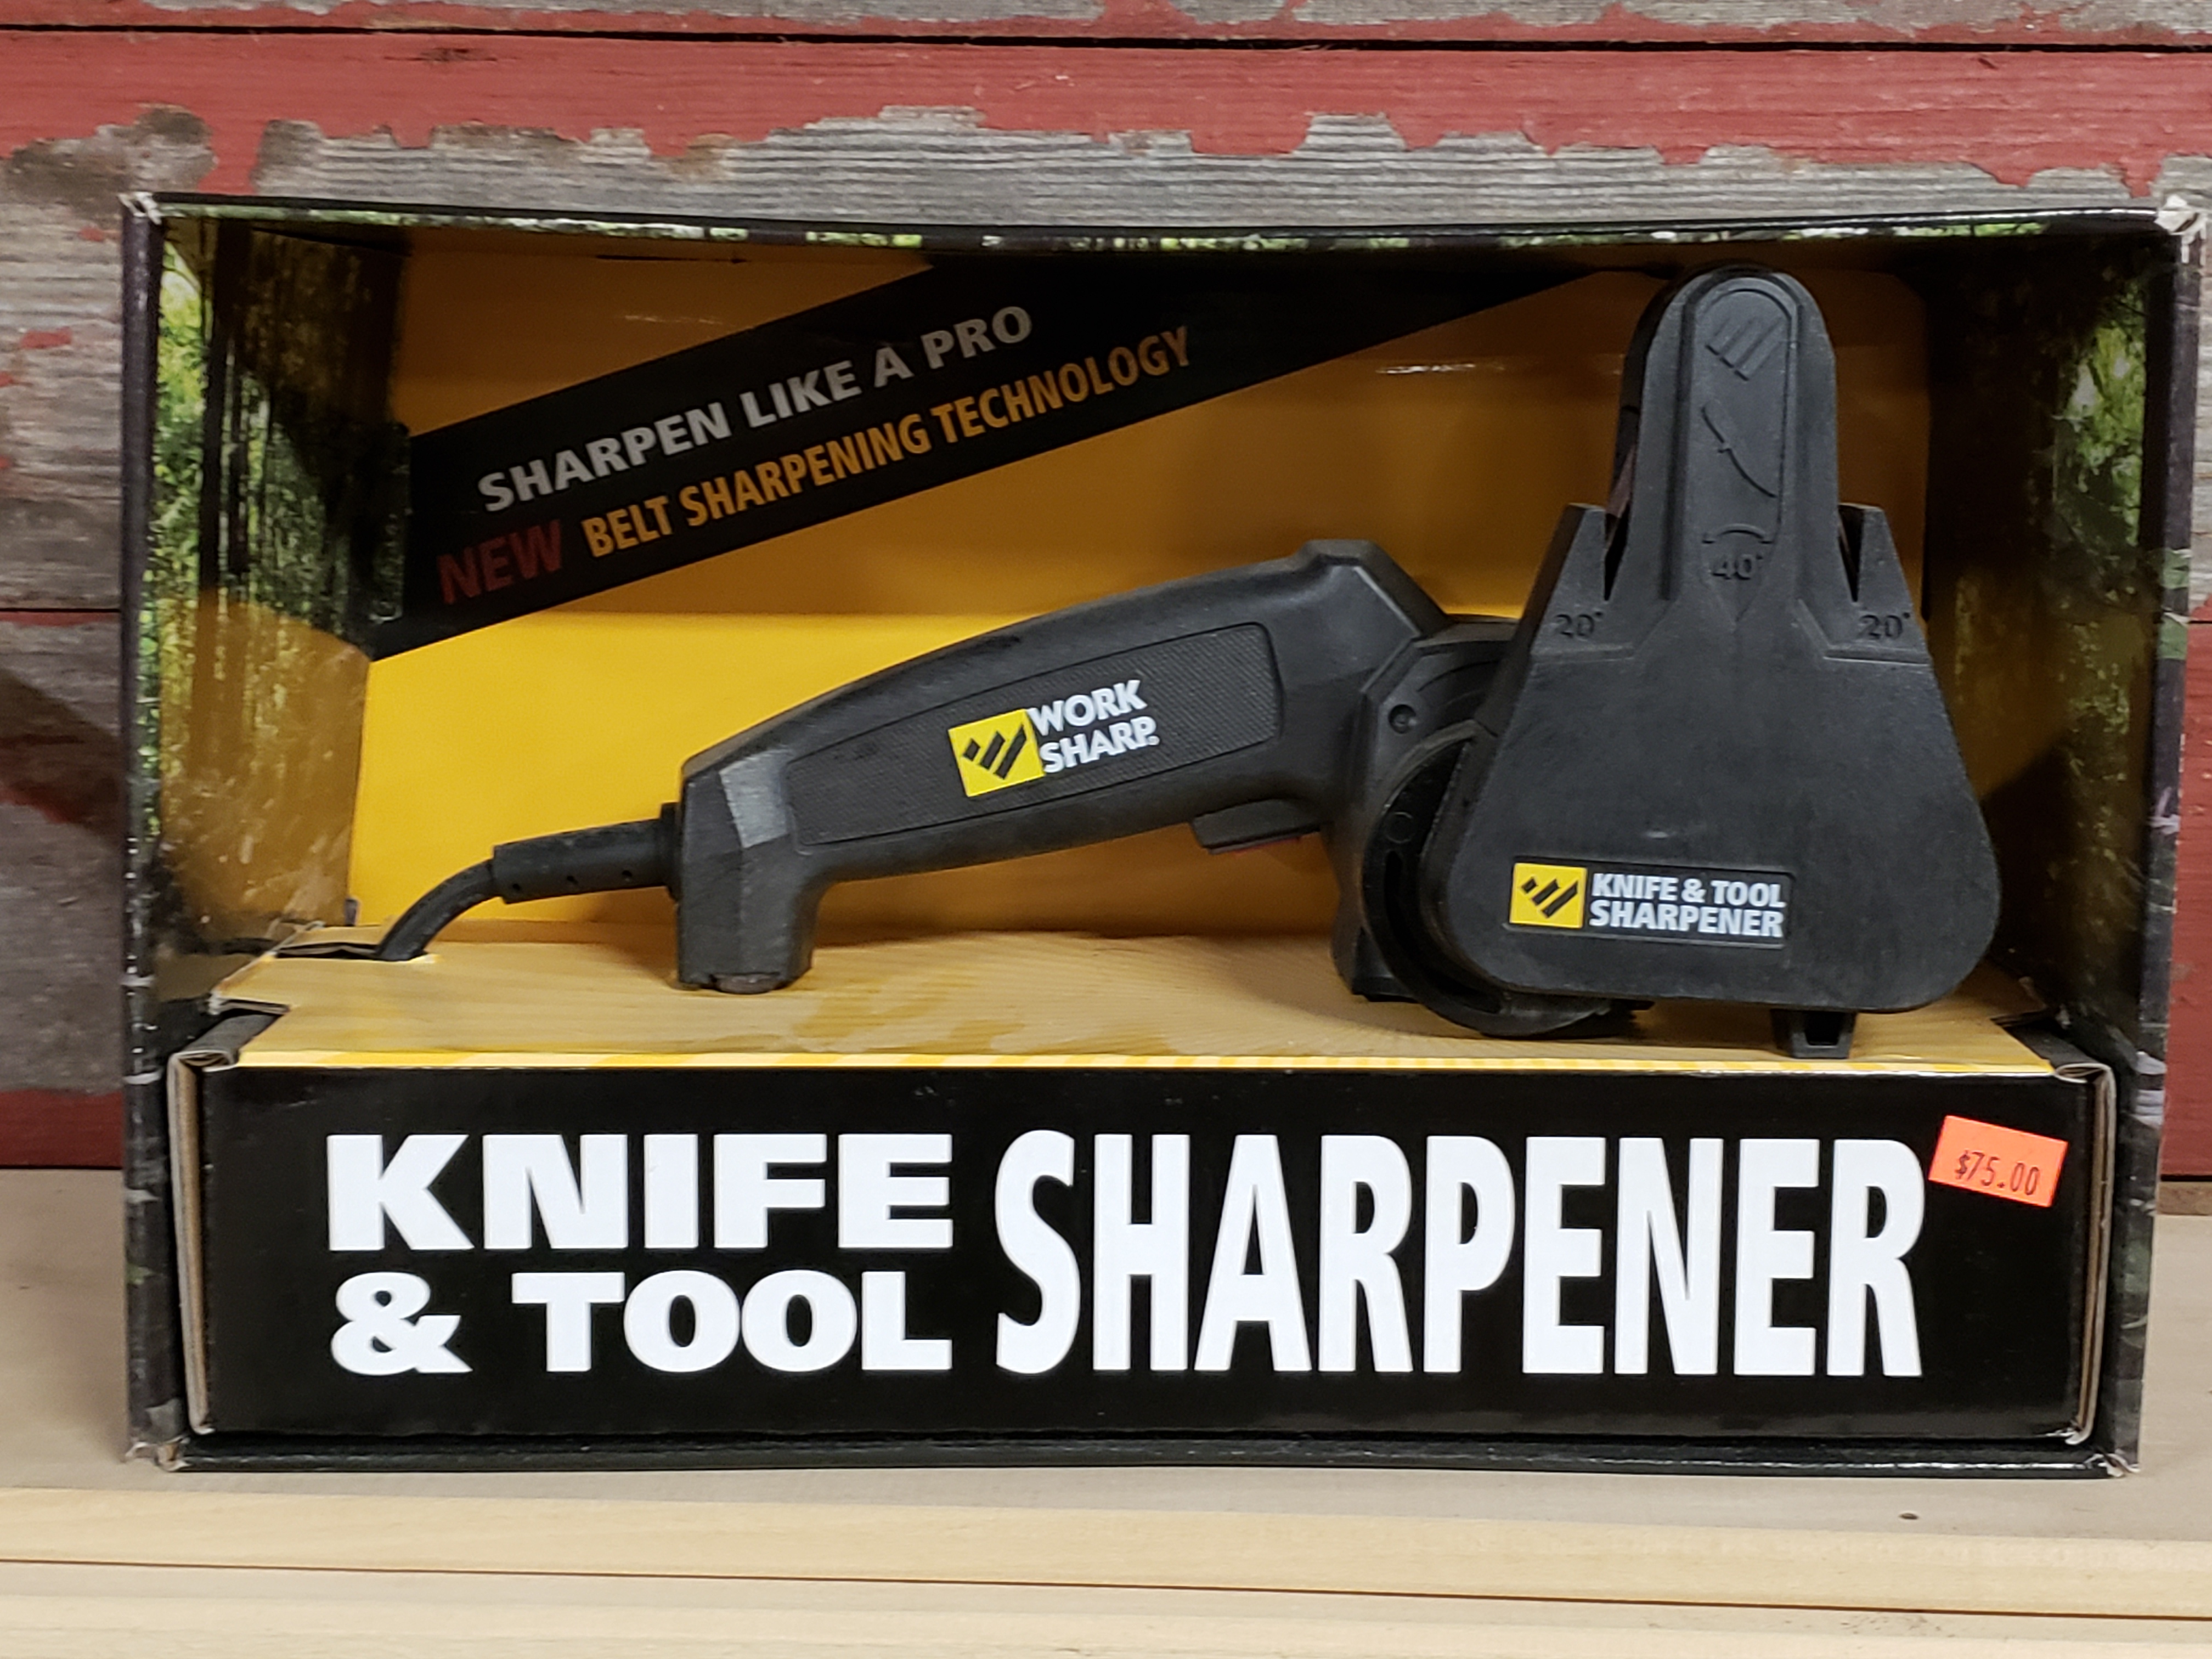 Work Sharp Knife Sharpener